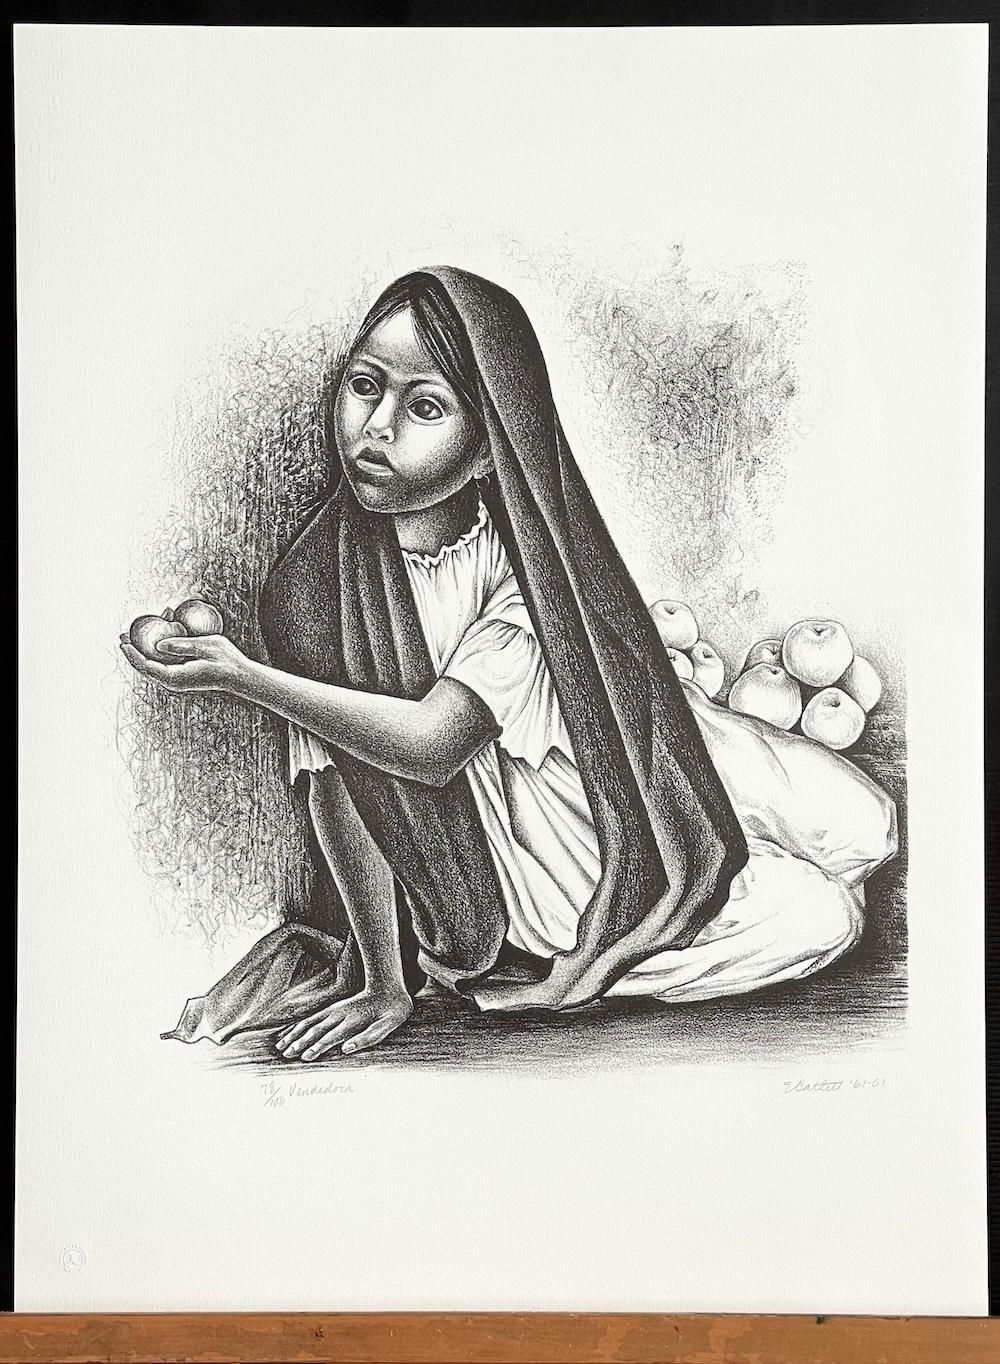 VENDEDORA, une lithographie en édition limitée de la célèbre sculptrice et graveuse mexicaine d'origine américaine Elizabeth Catlett(née en 1915-2012) représente un portrait sensible en noir et blanc d'une jeune villageoise mexicaine vendant des